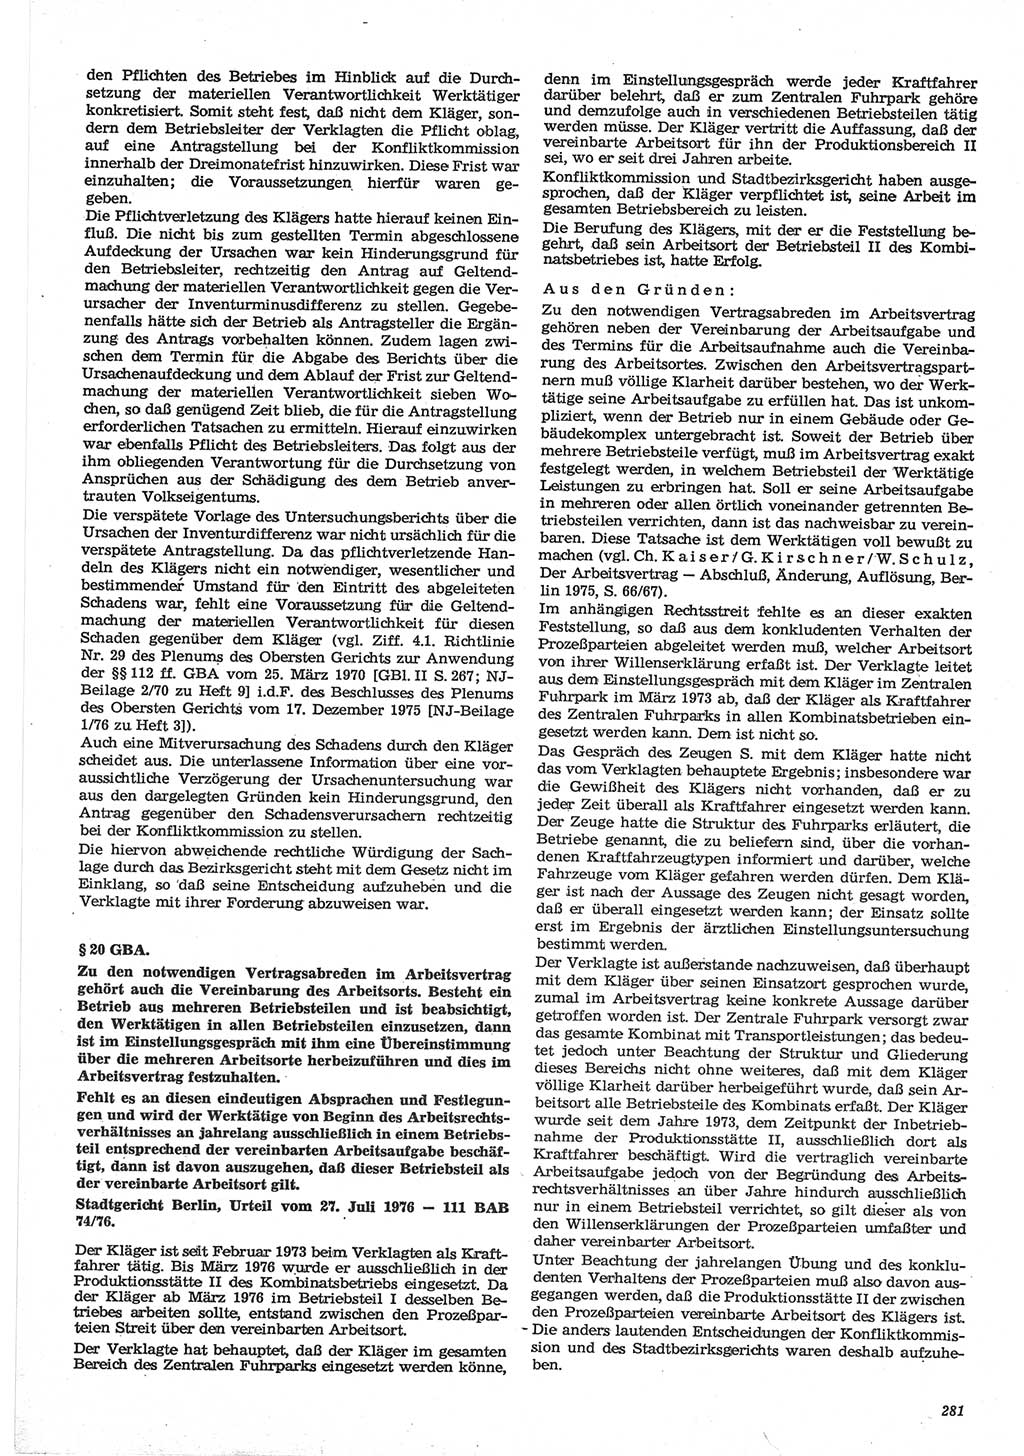 Neue Justiz (NJ), Zeitschrift für Recht und Rechtswissenschaft-Zeitschrift, sozialistisches Recht und Gesetzlichkeit, 31. Jahrgang 1977, Seite 281 (NJ DDR 1977, S. 281)